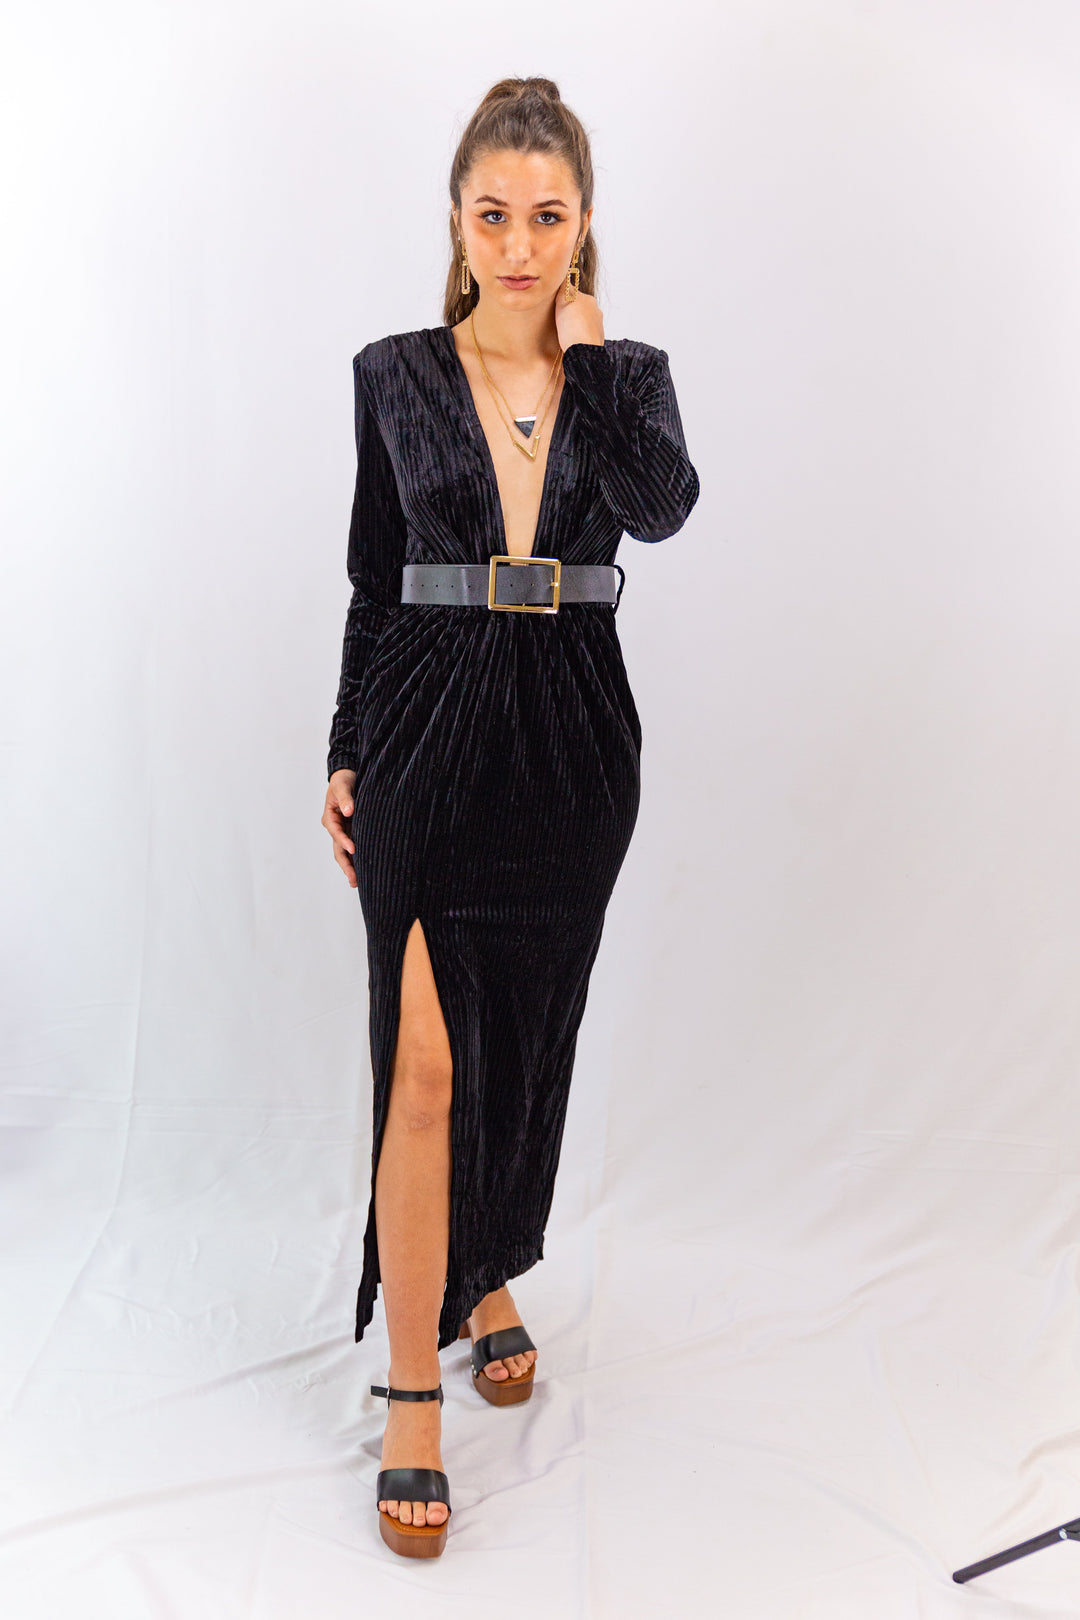 Fabonics Velvet Vogue Black Plunging V-Neck Dress with Thigh-High Slit for Elegant Evening Style